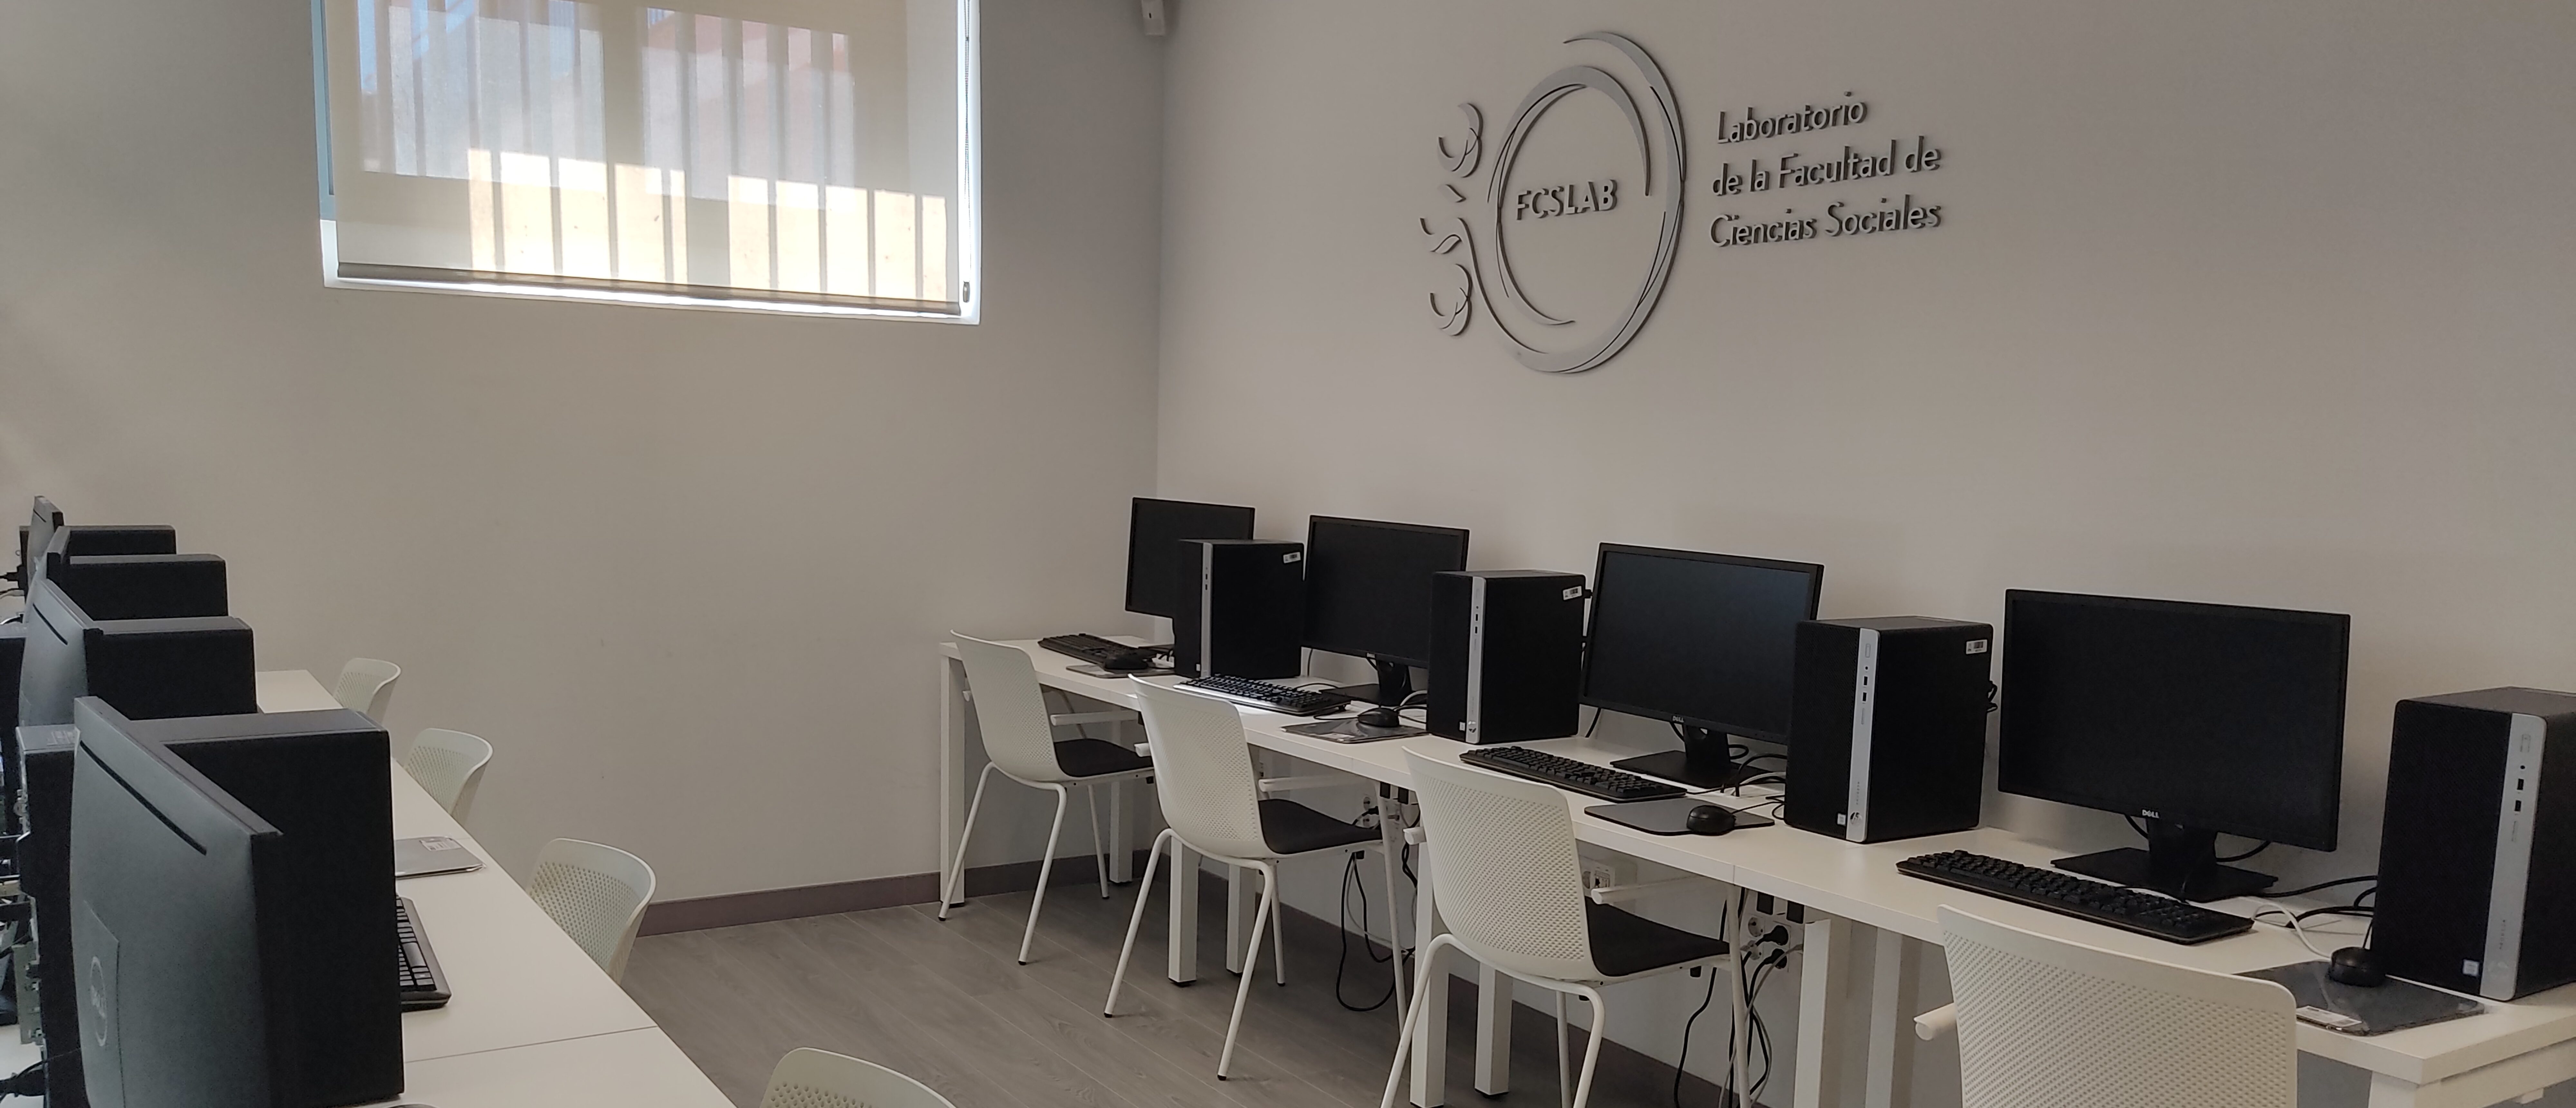 El  FCSLAB obtiene la homologación como Servicio Científico-Técnico de la Universidad Pablo de Olavide